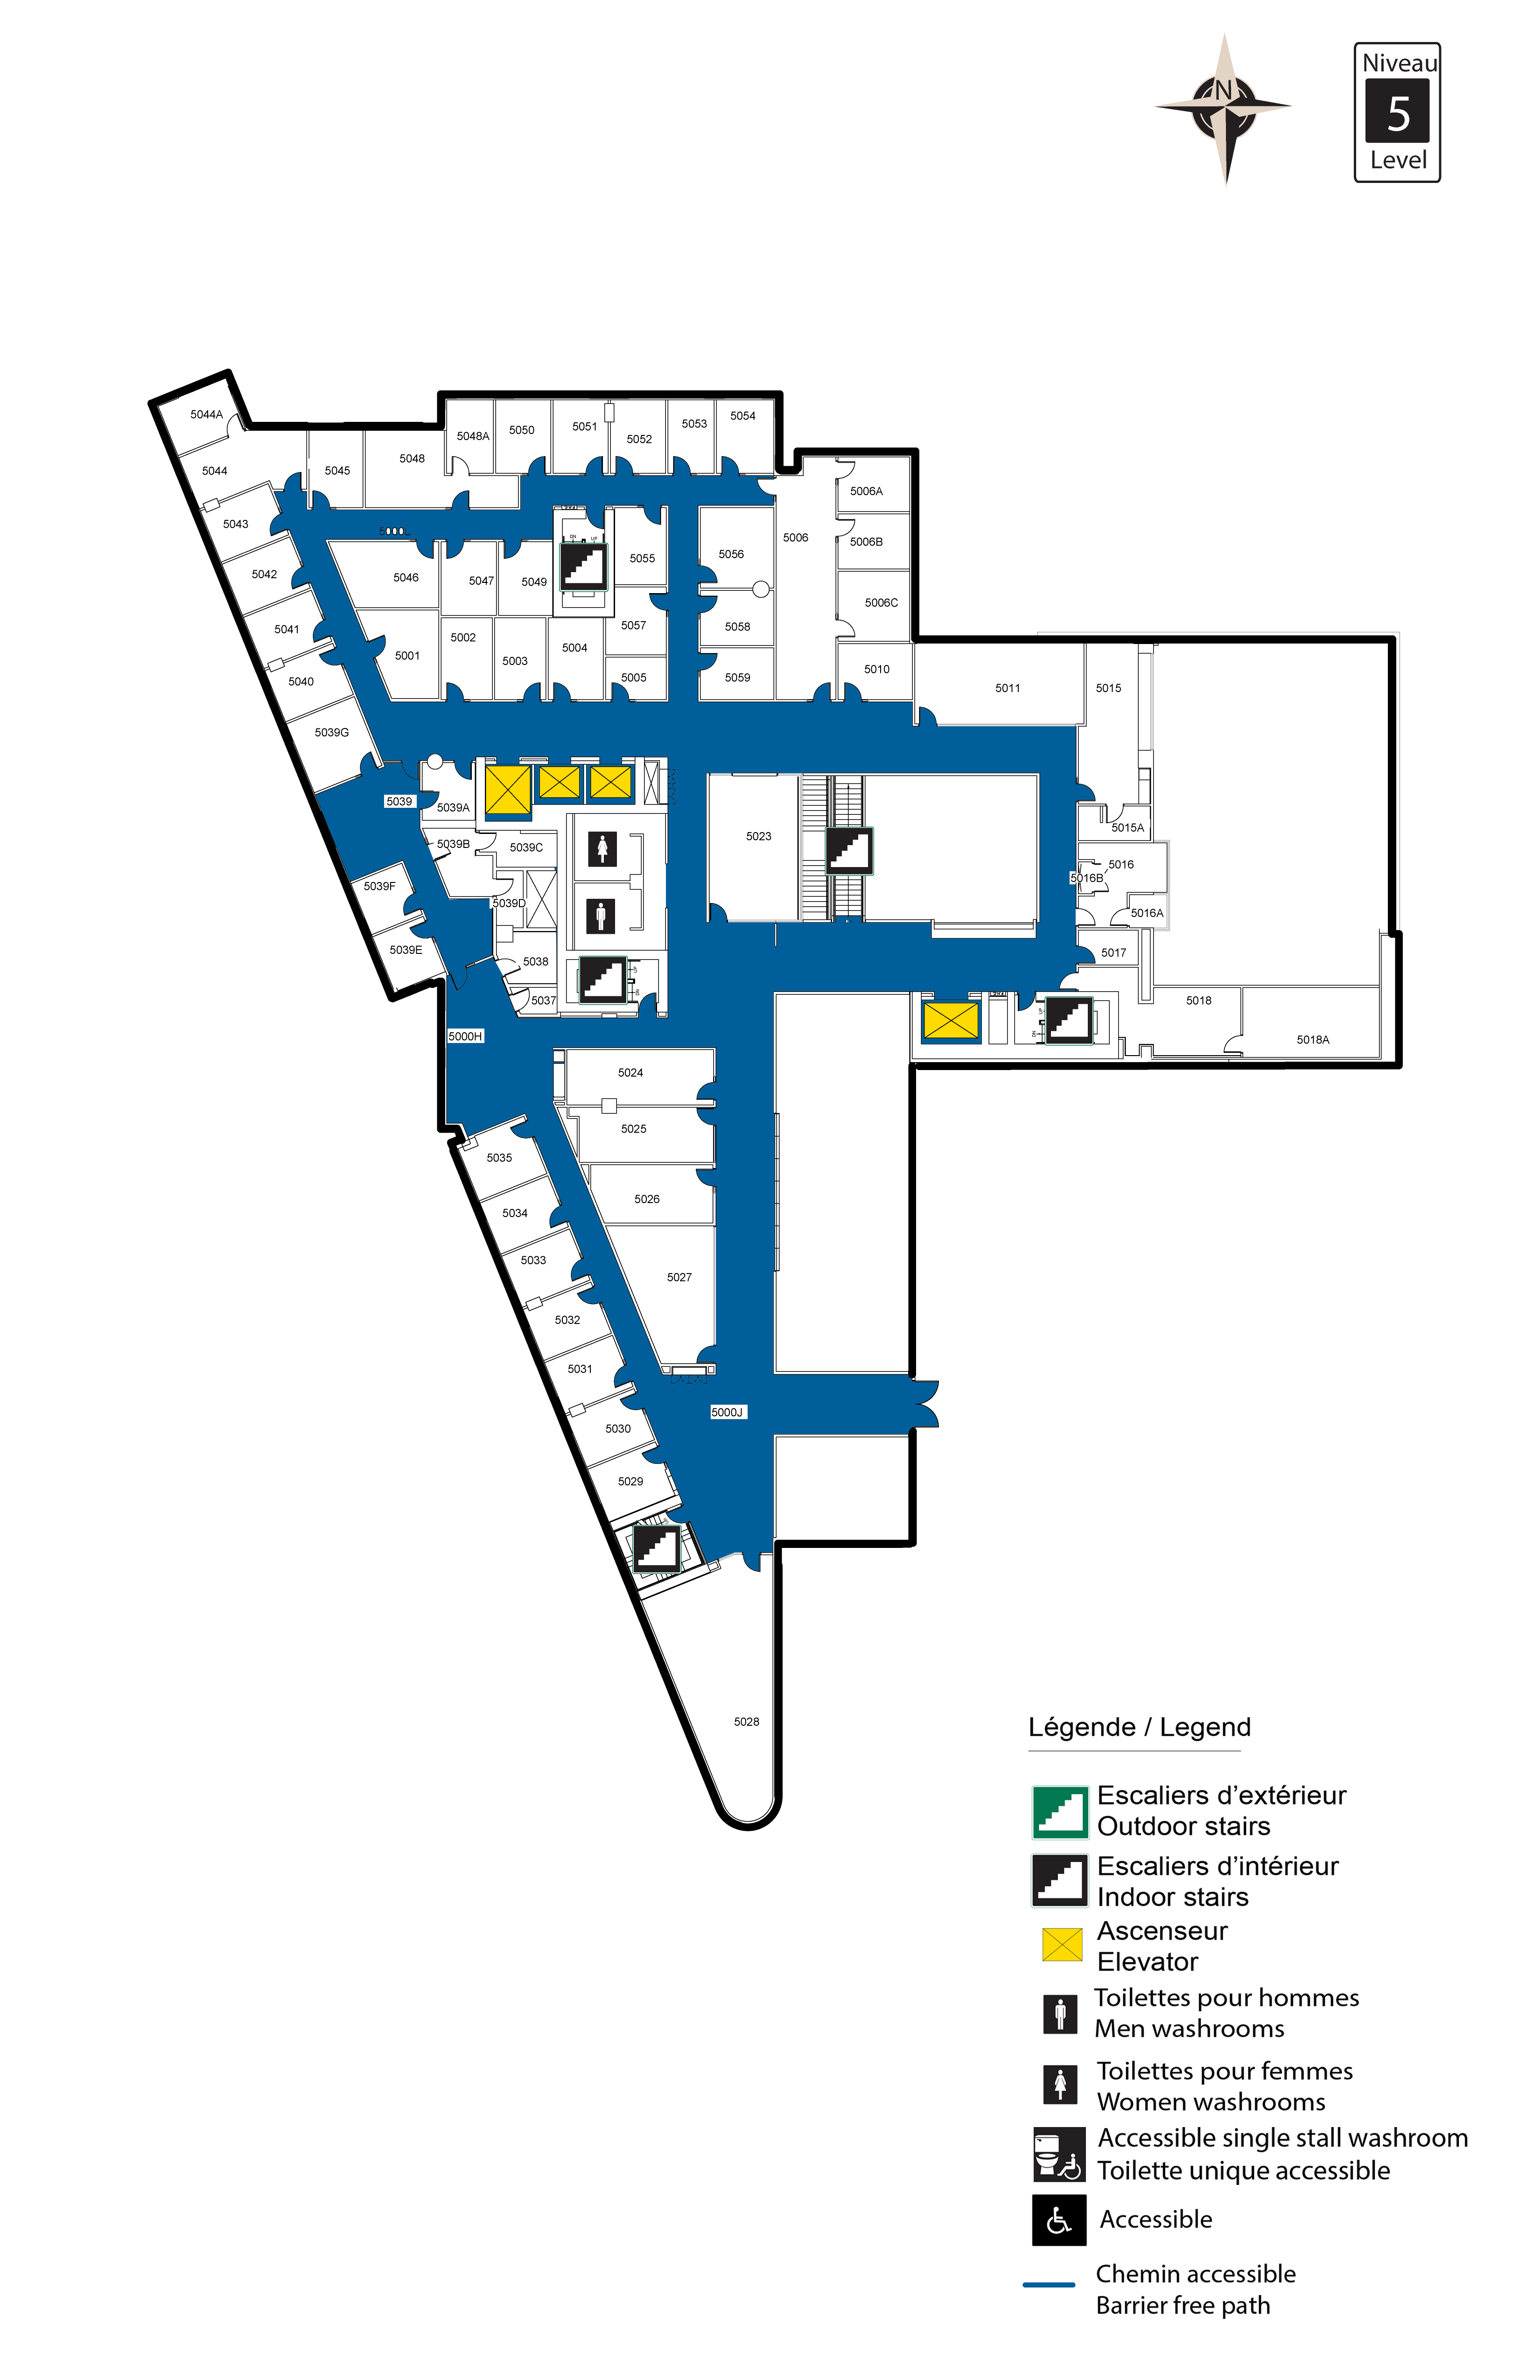 Level 5 floor plan